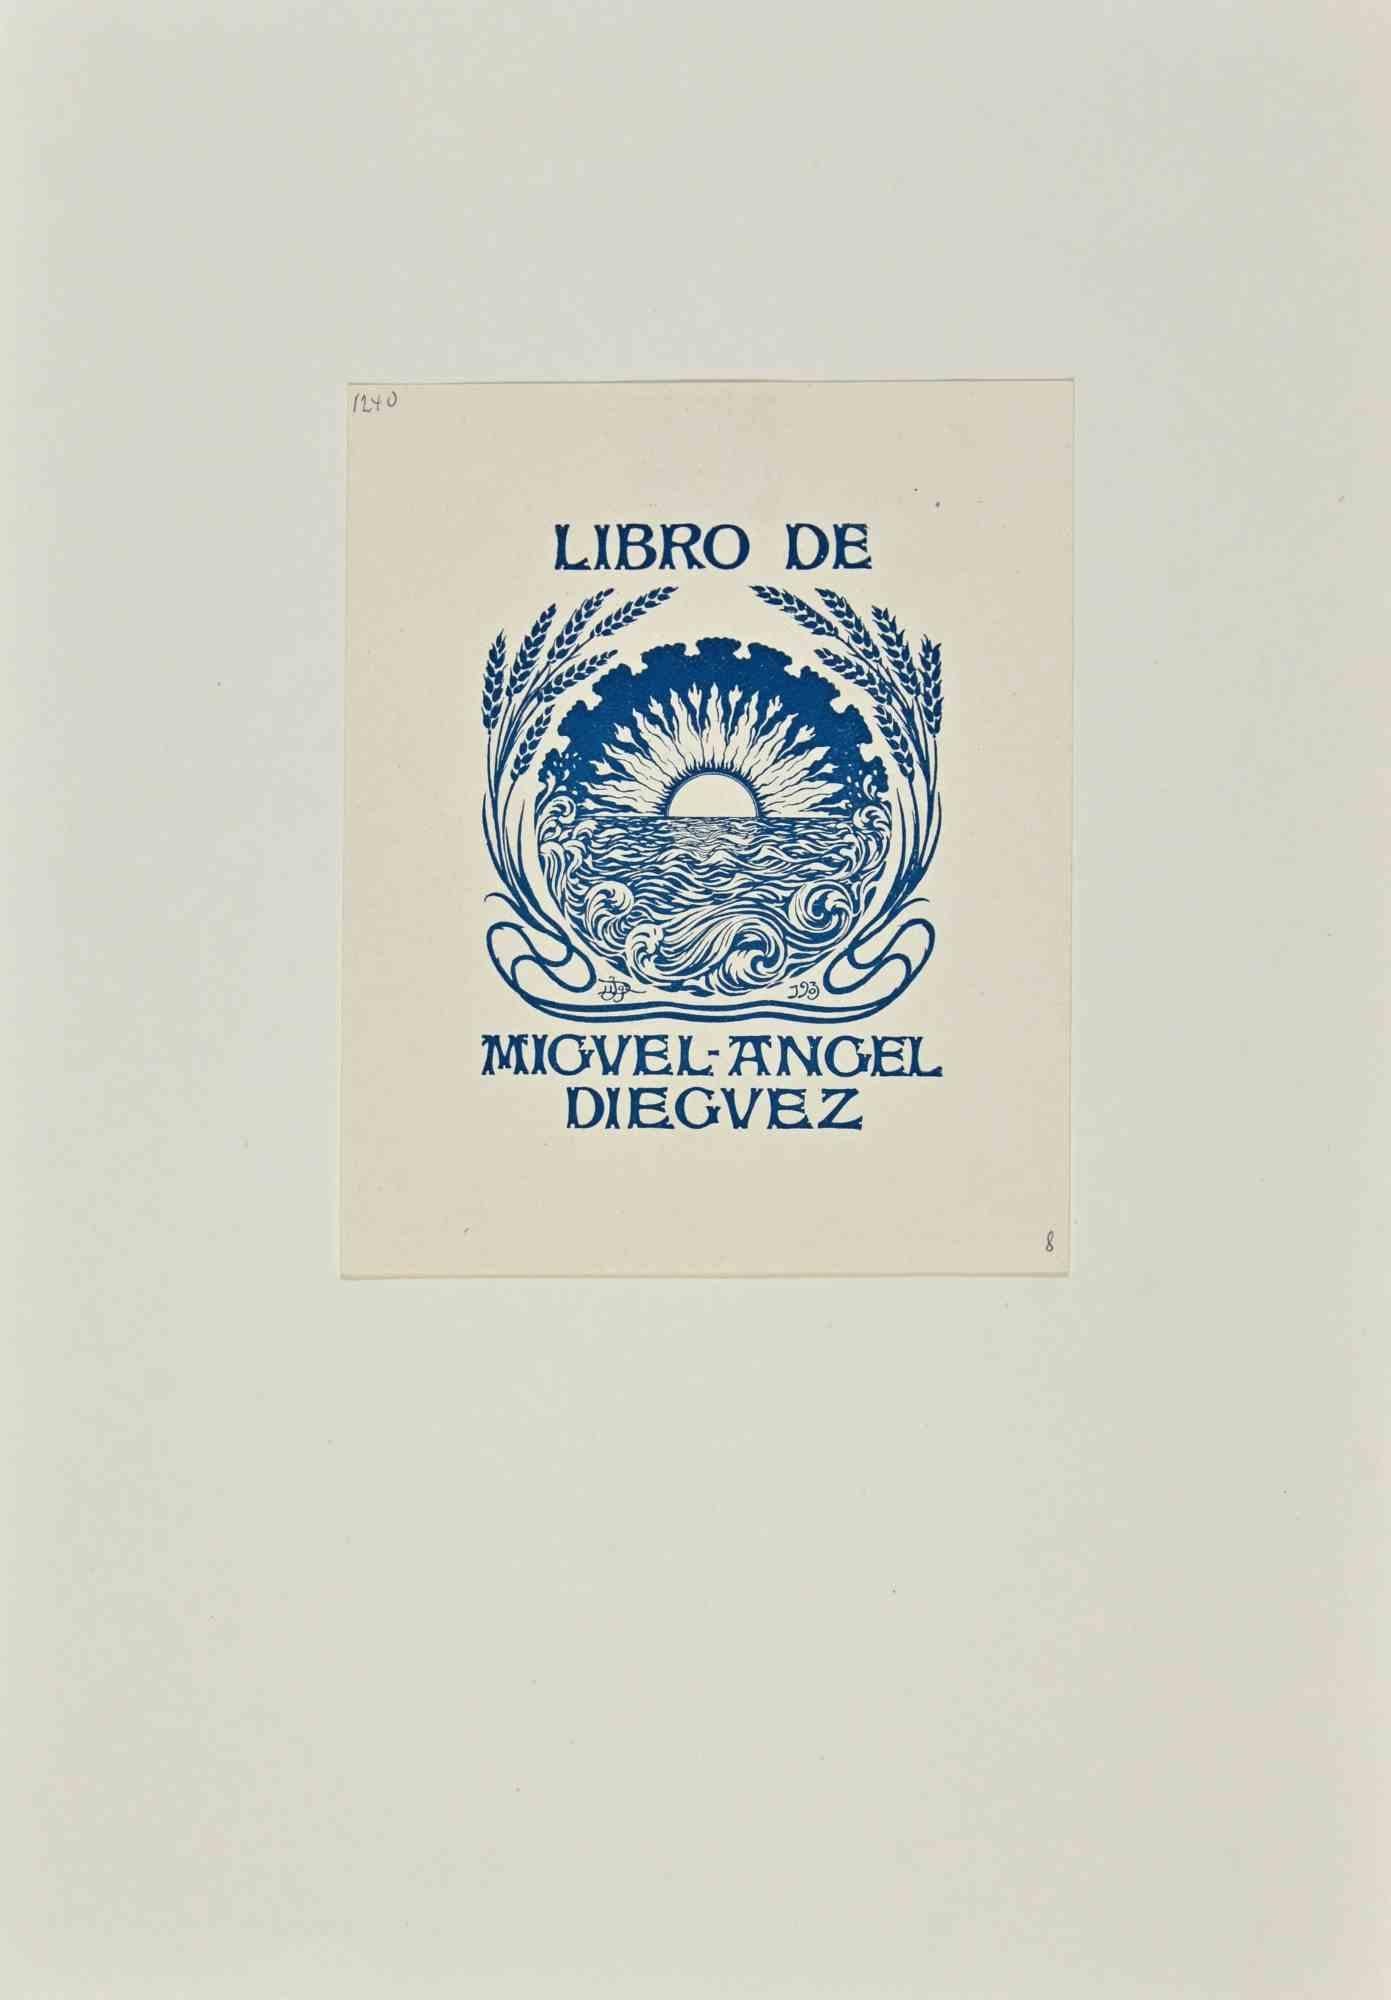 Libro de Miguel Angel Dieguez - Holzschnitt von Joaquín Diéguez y Díaz - 1903